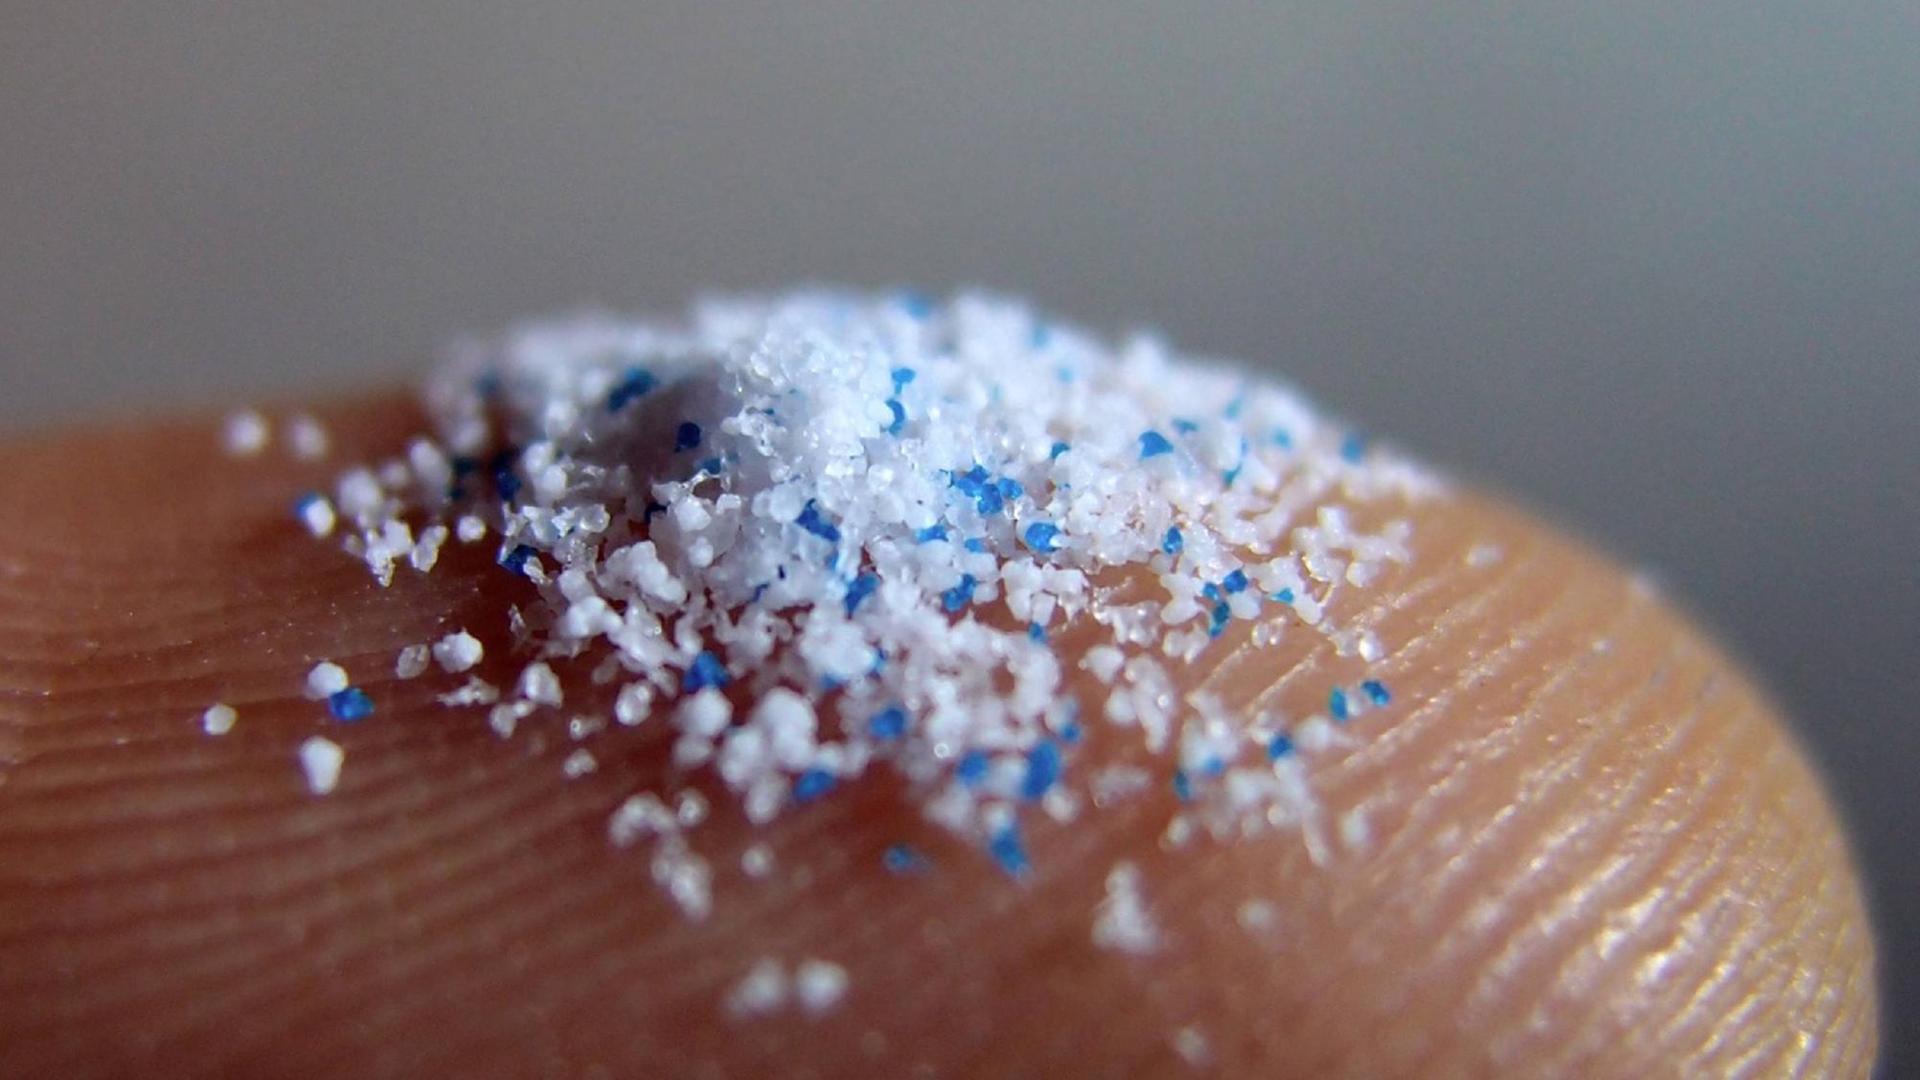 Blaue und weiße Mikroplastik-Partikel auf einer Fingerspitze.